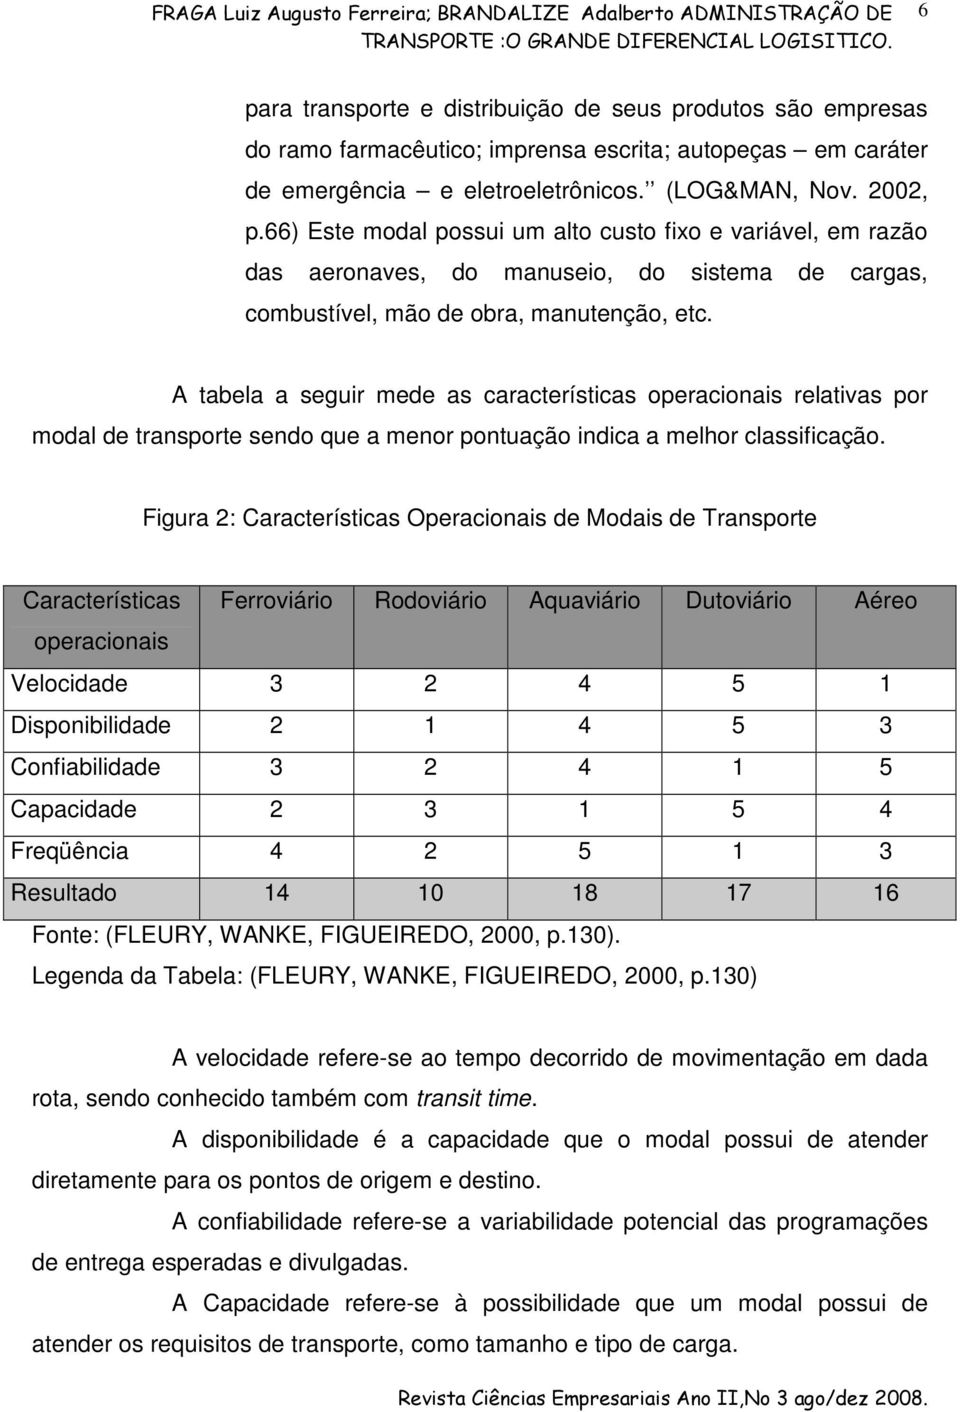 A tabela a seguir mede as características operacionais relativas por modal de transporte sendo que a menor pontuação indica a melhor classificação.